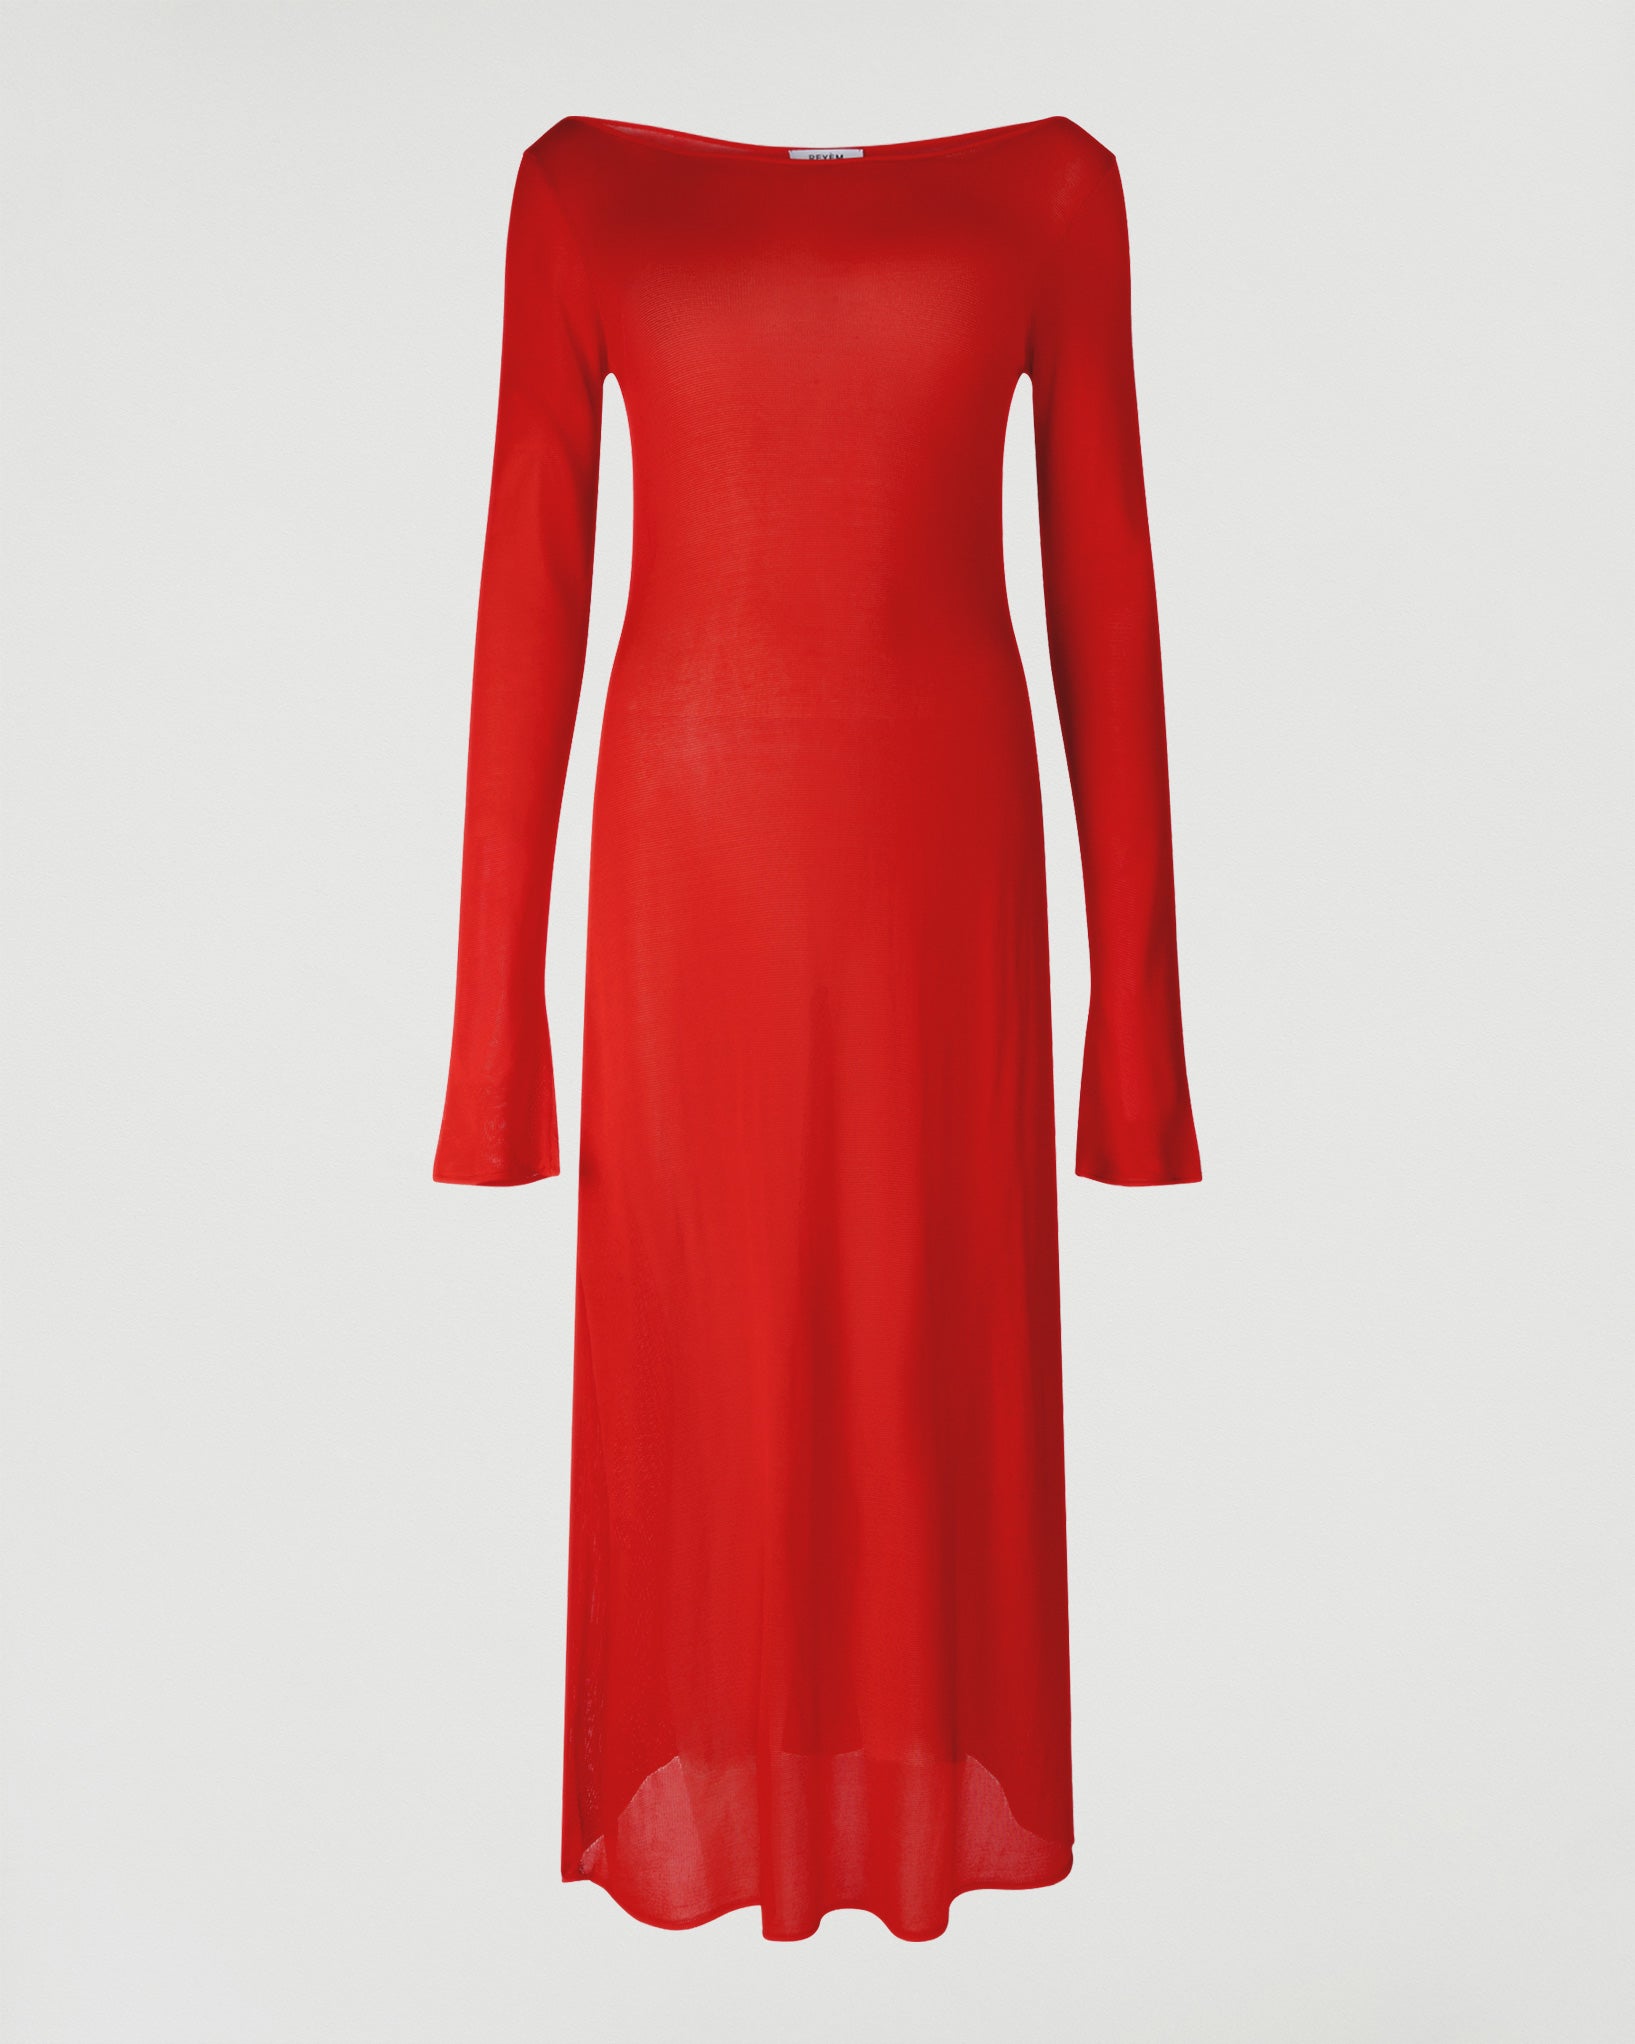 REYÈM knitted red off shoulder Holiday dress